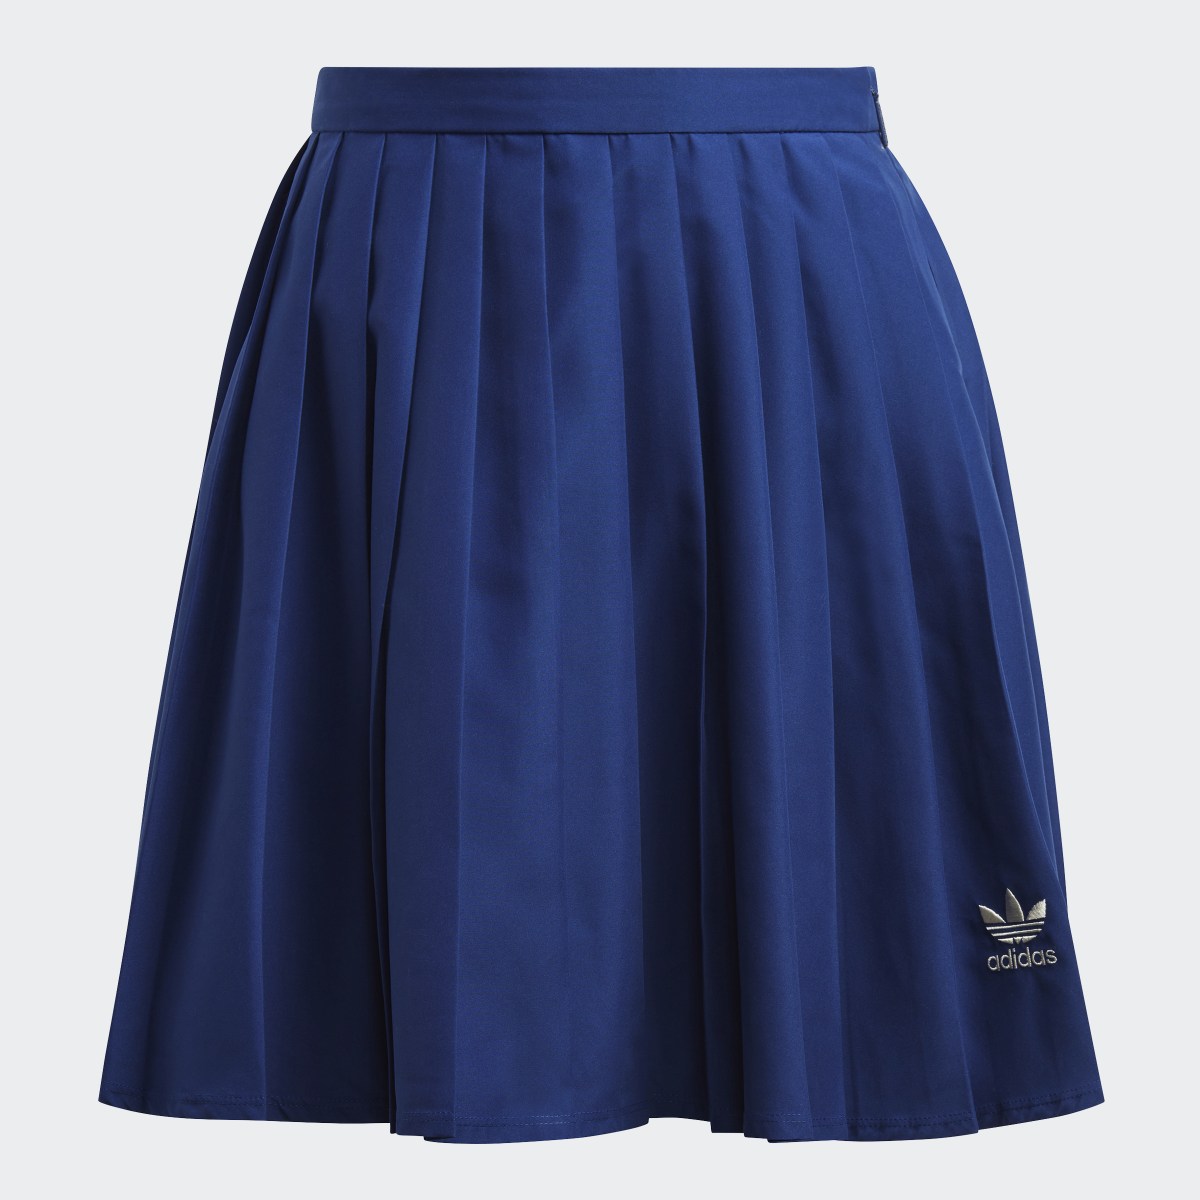 Adidas Pleated Skirt. 4